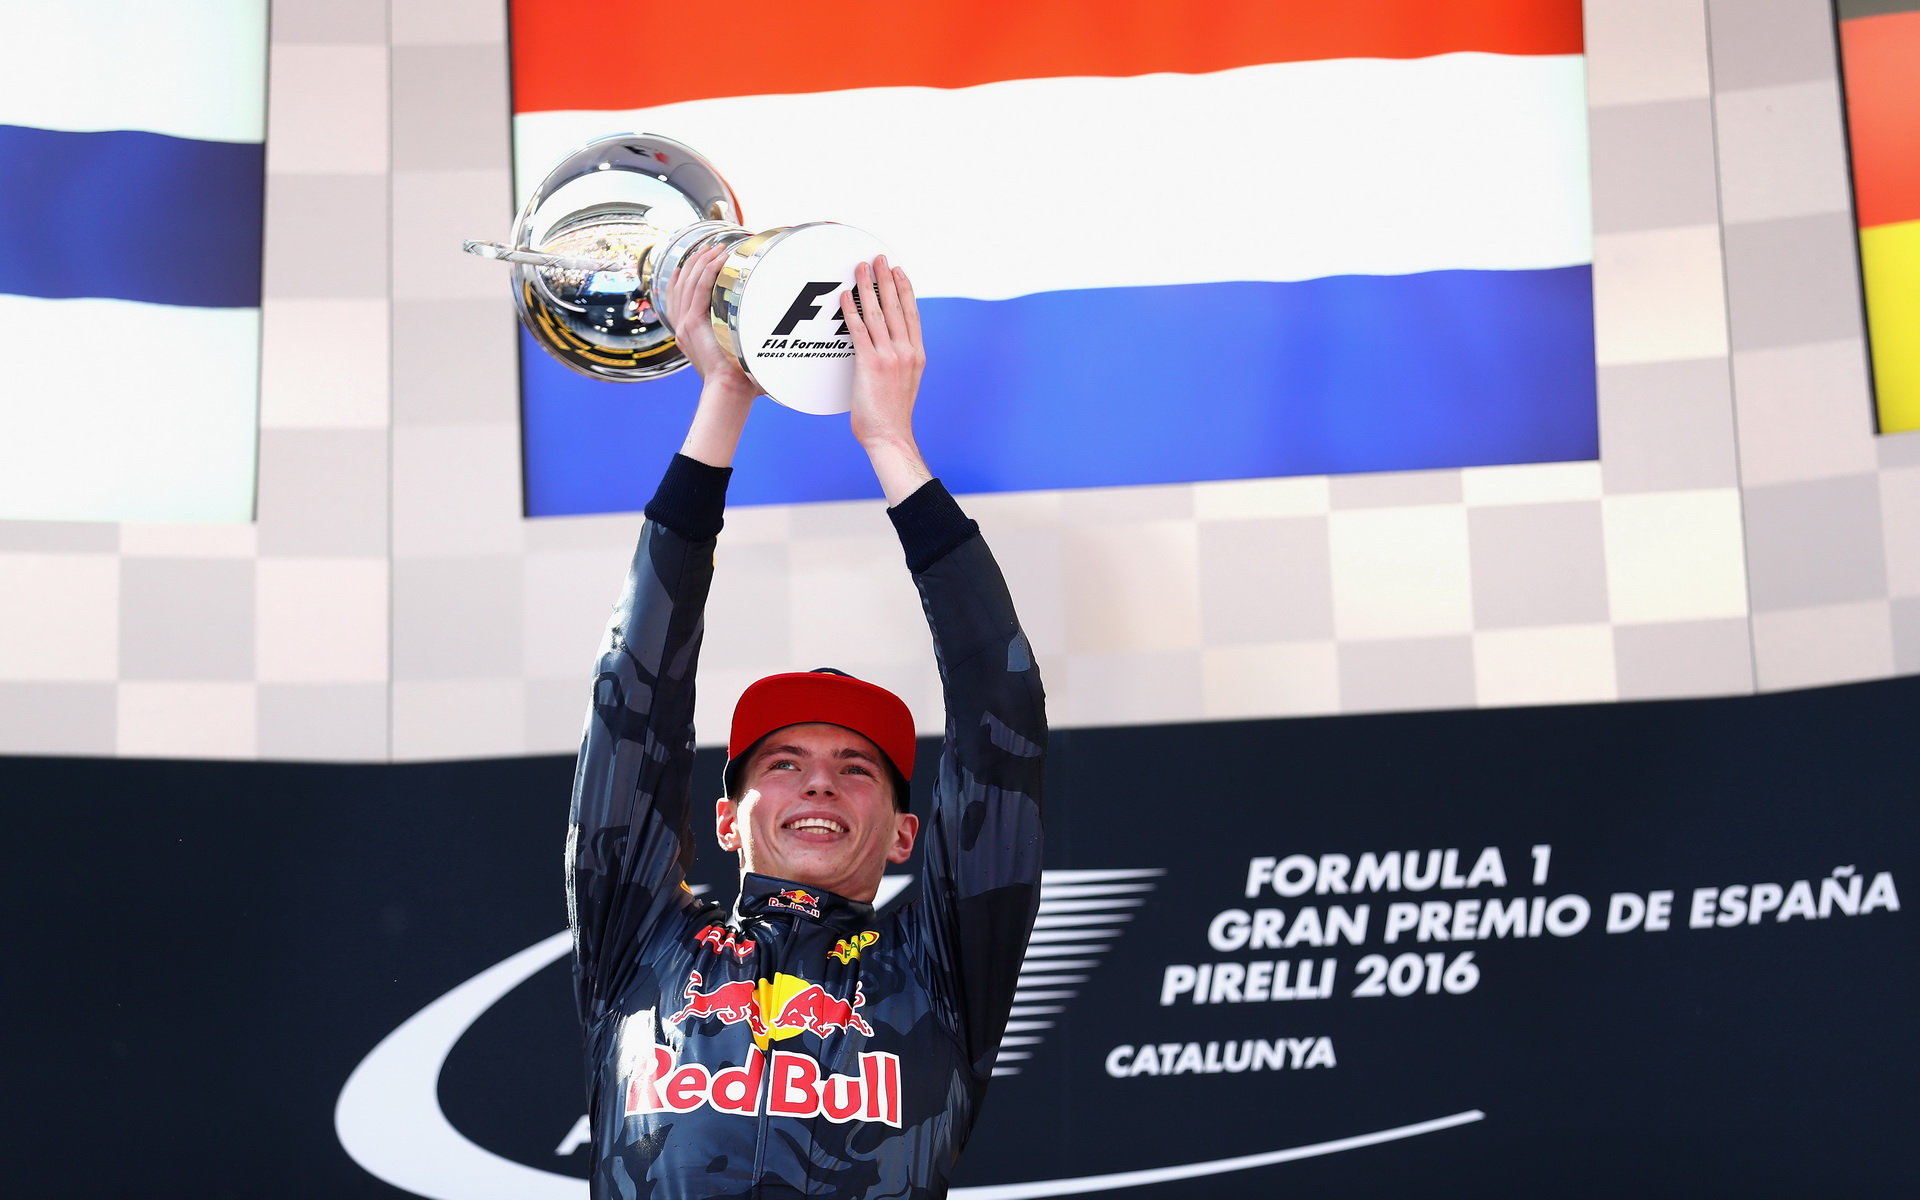 Max Verstappen, nejmladší vítěz Formule 1 se svou trofejí v Barceloně